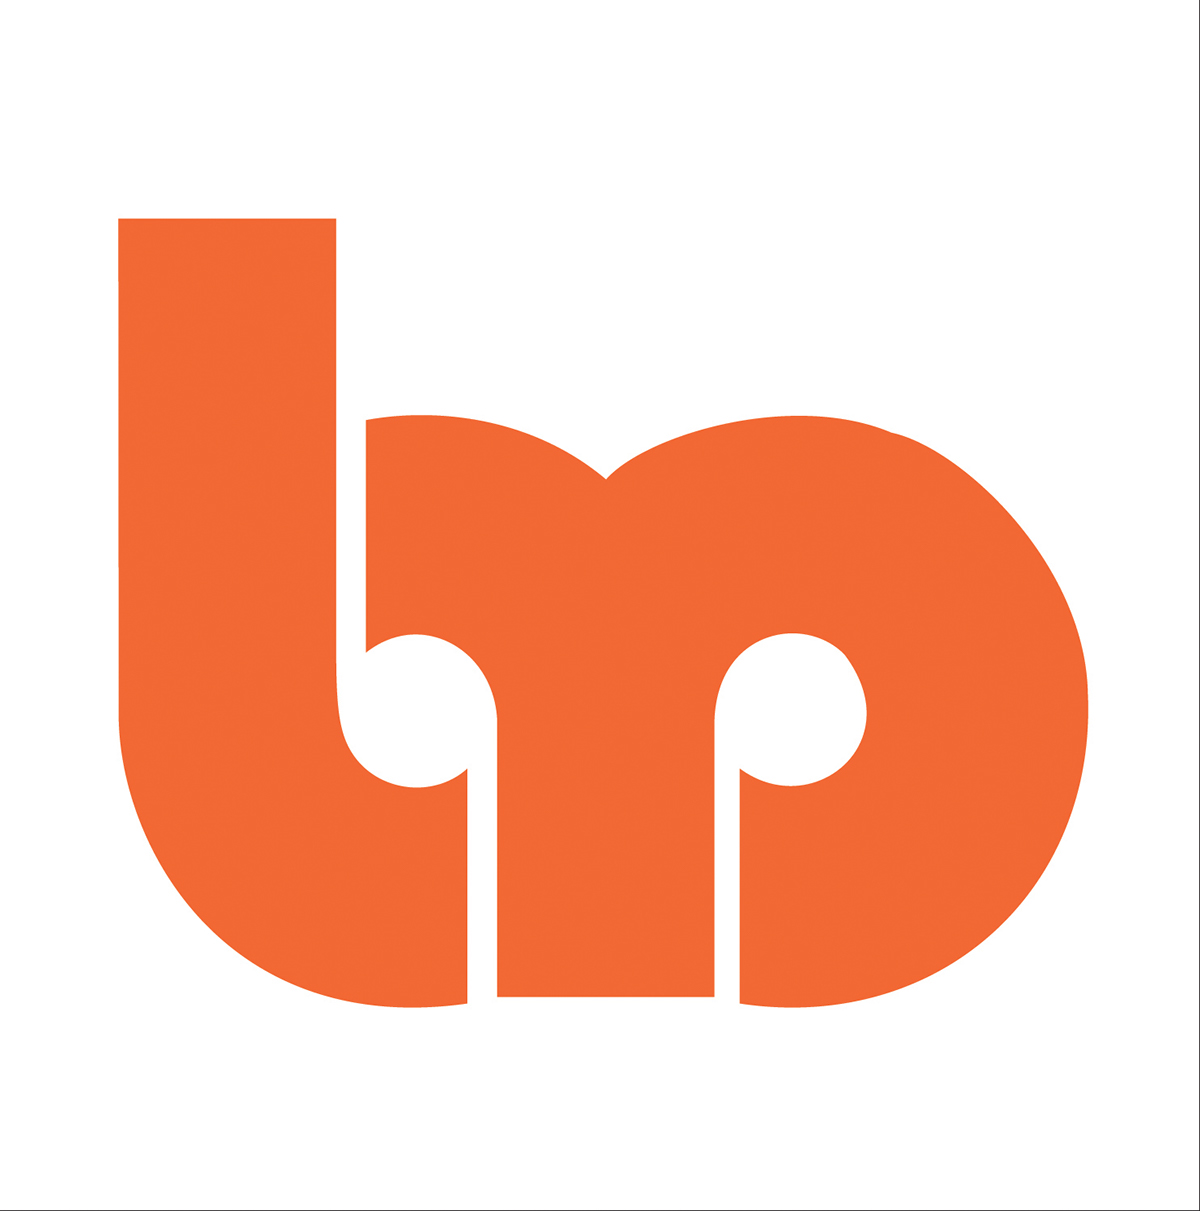 art logo stationary letterhead type orange